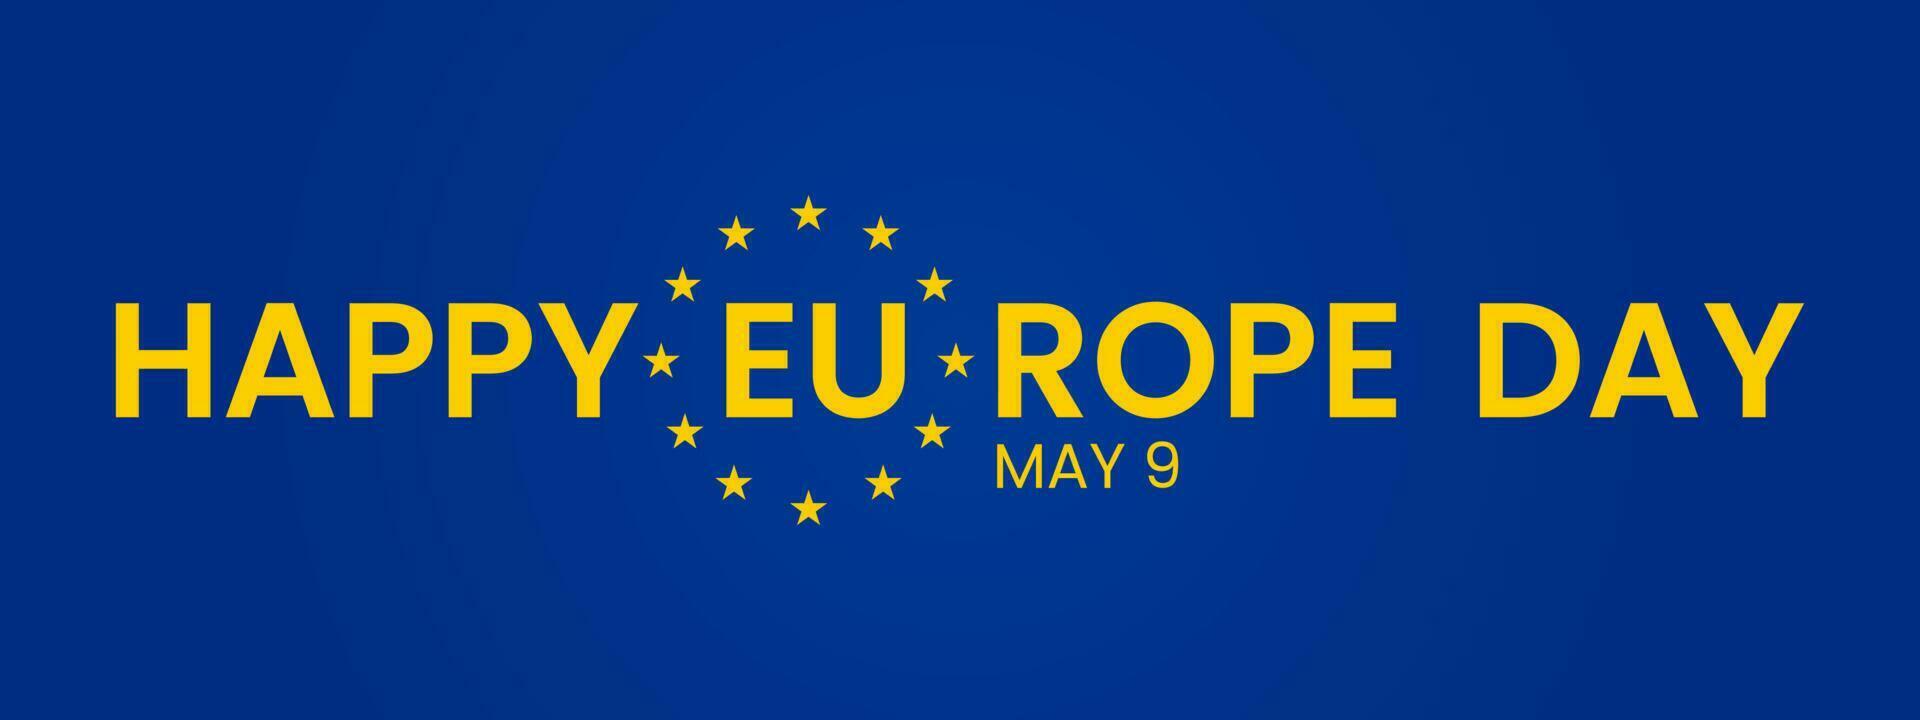 feliz Europa dia do europeu União. pode 9. azul bandeira, amarelo estrelas, diverso pessoas segurando mãos junto, diferente cultural igualdade, vetor ilustração.